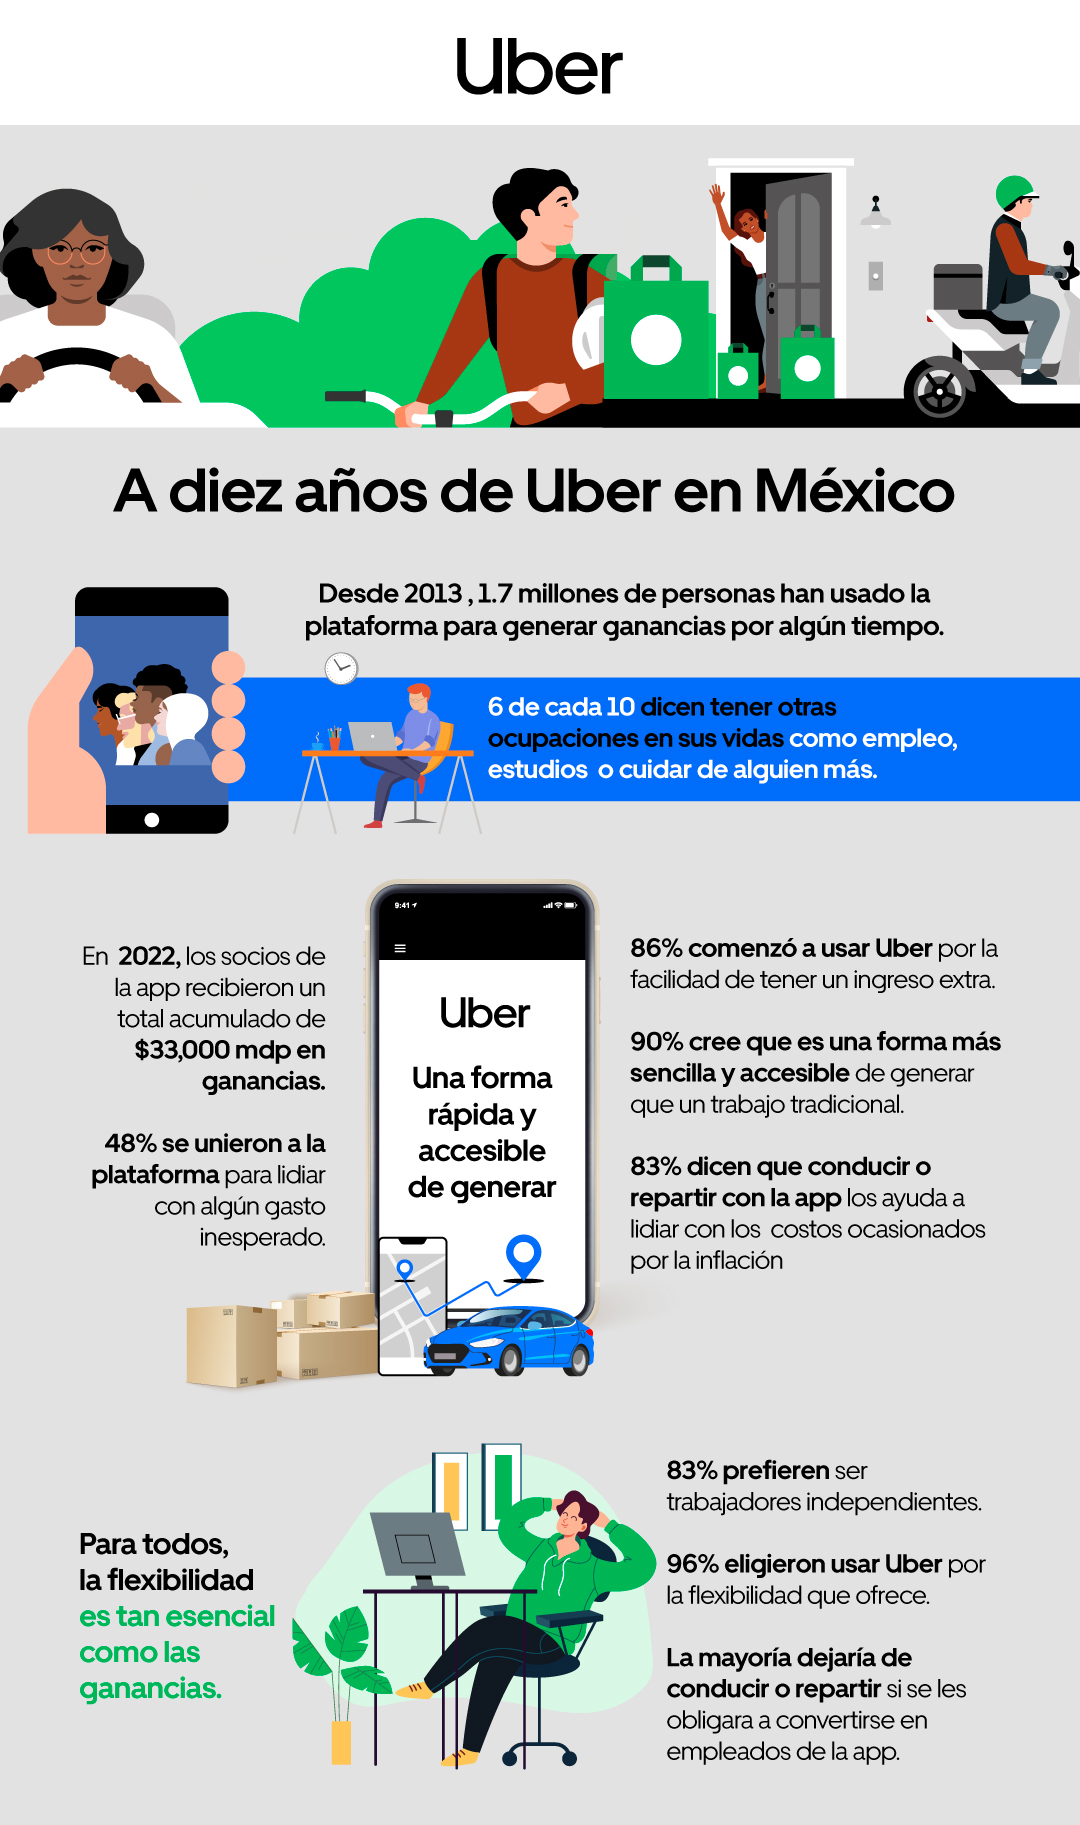 Independencia y ganancias: lo más valorado por conductores y repartidores de la app de Uber, según encuesta nacional